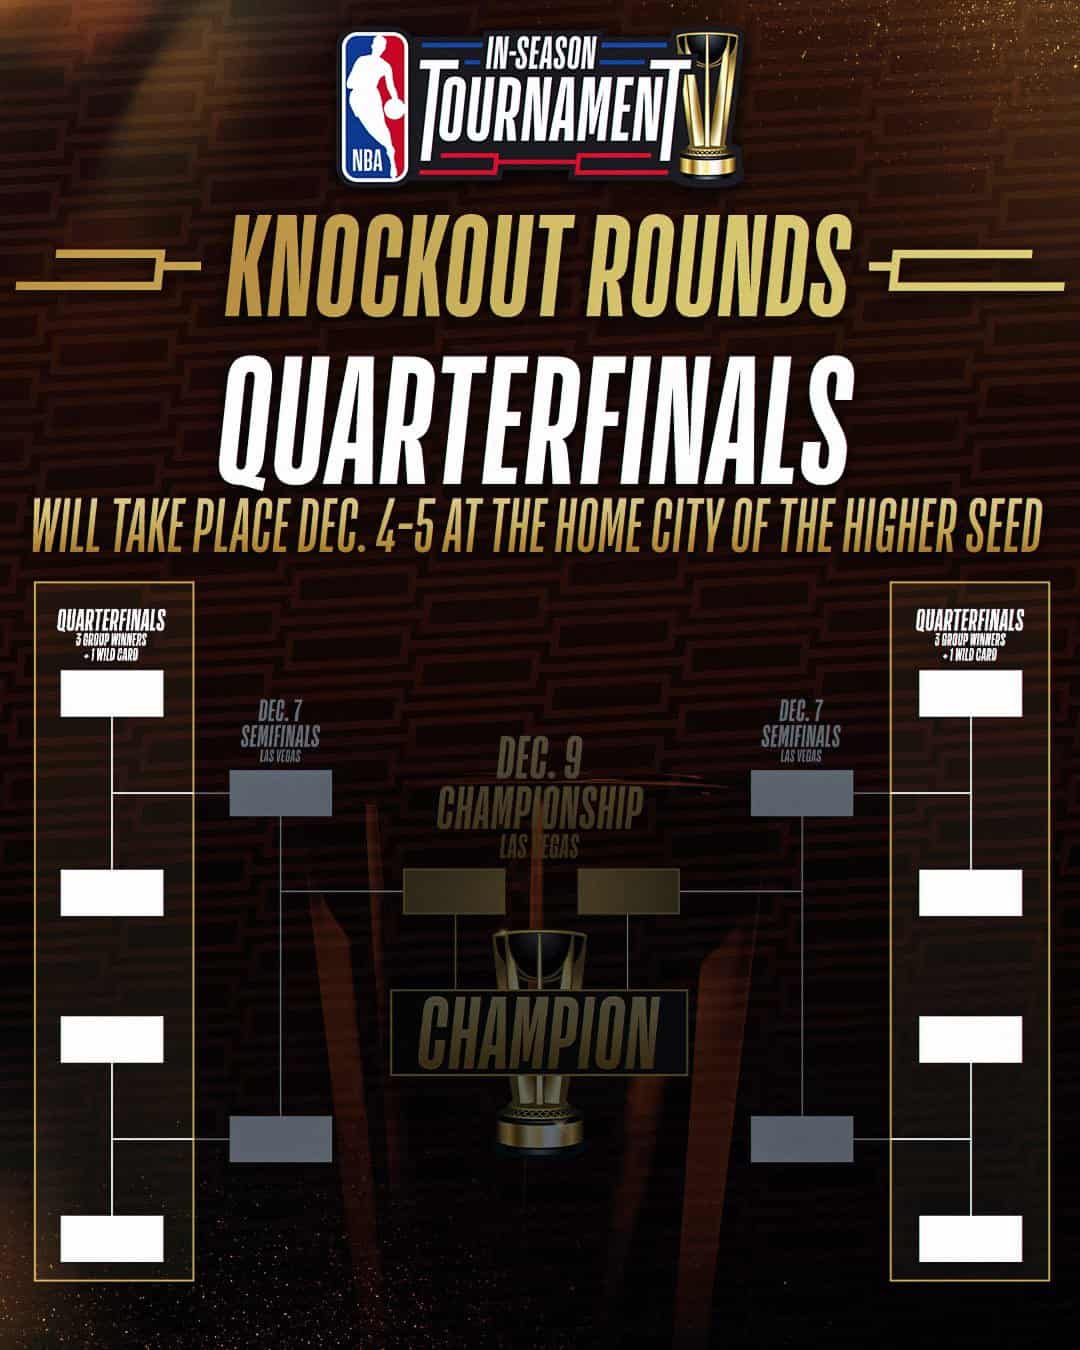 rondas knock-outs in season tournament